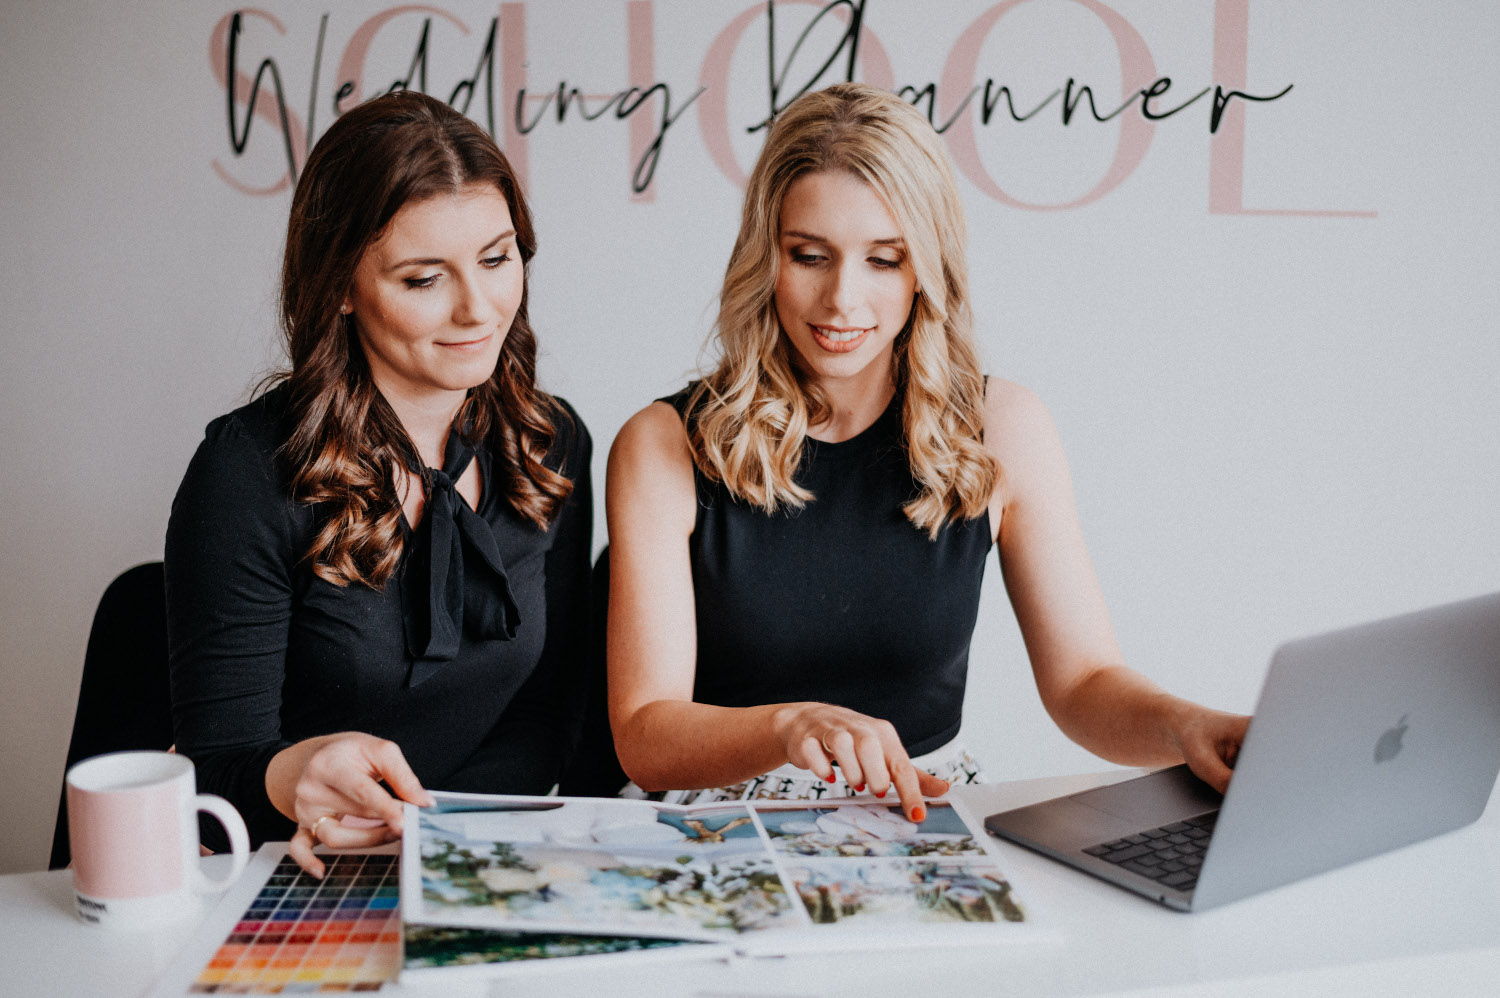 Wedding Planner School – auf dem Weg zur erfolgreichen Hochzeitsplanung